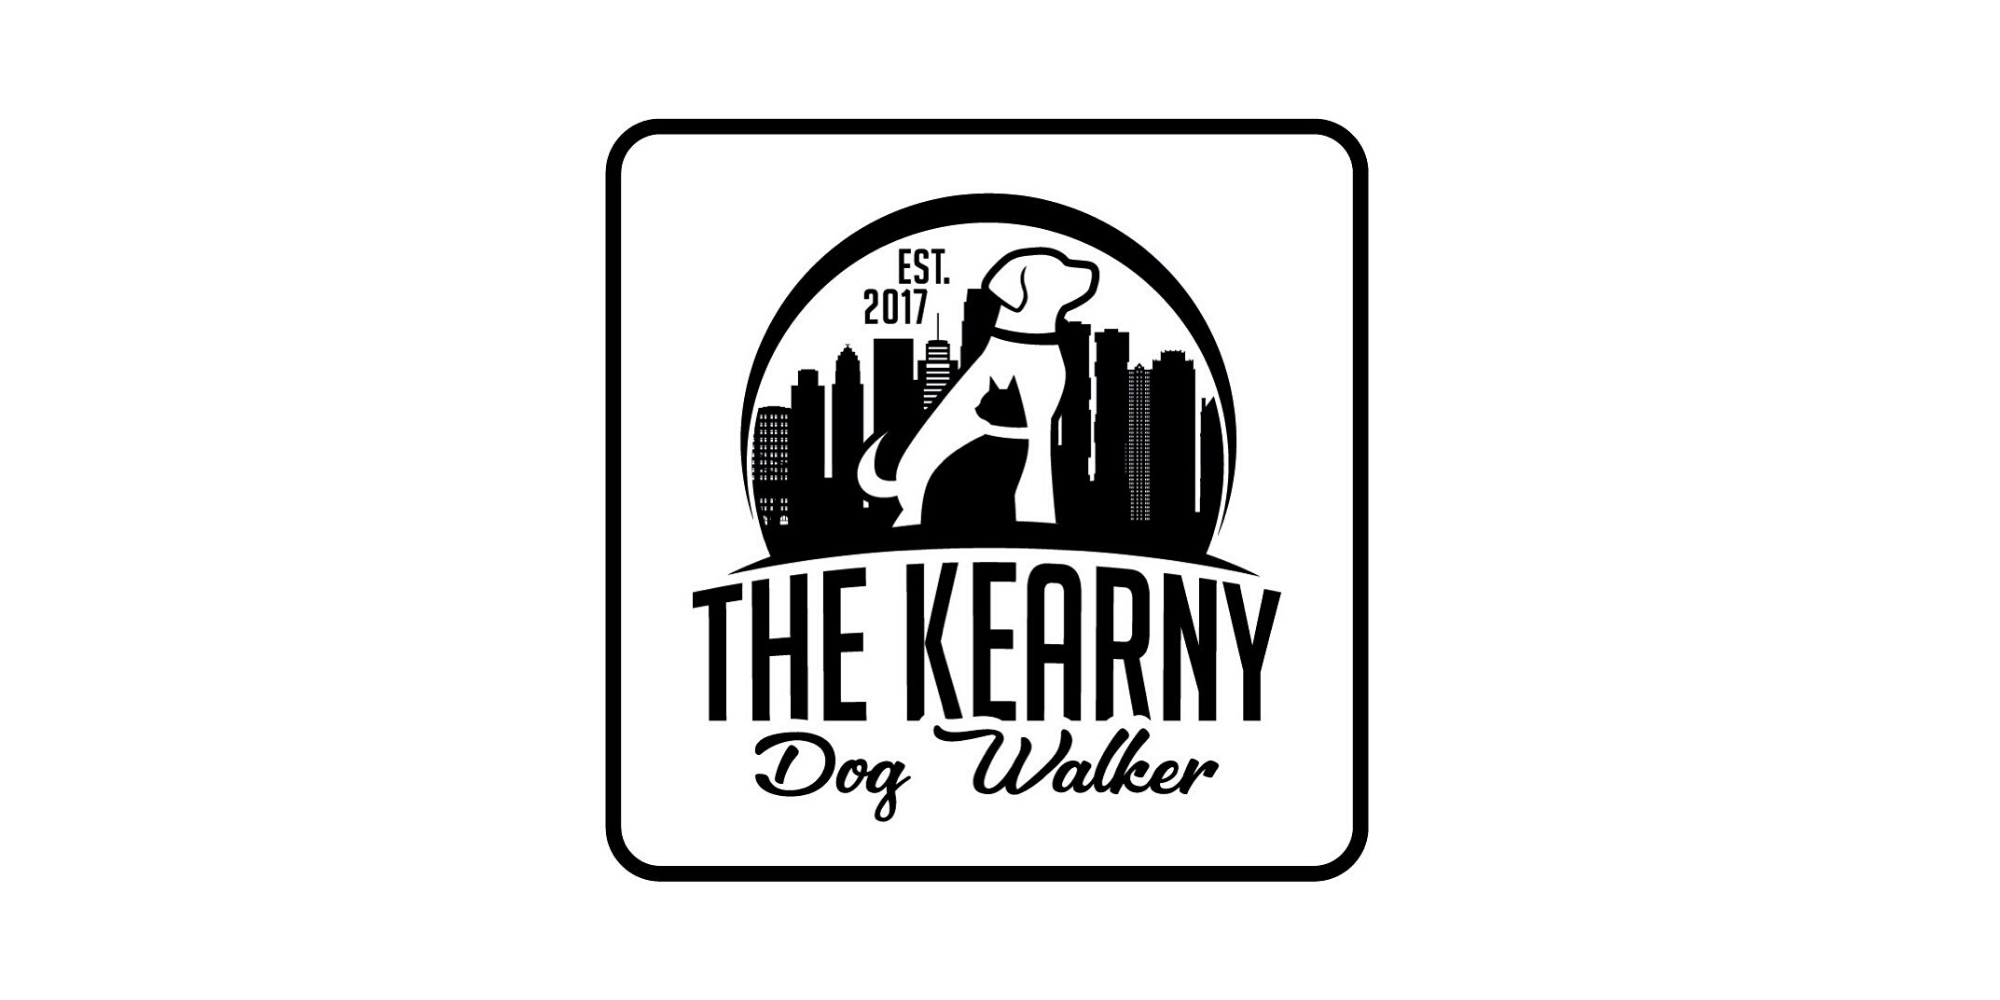 kearny dog walker logo and summary .png